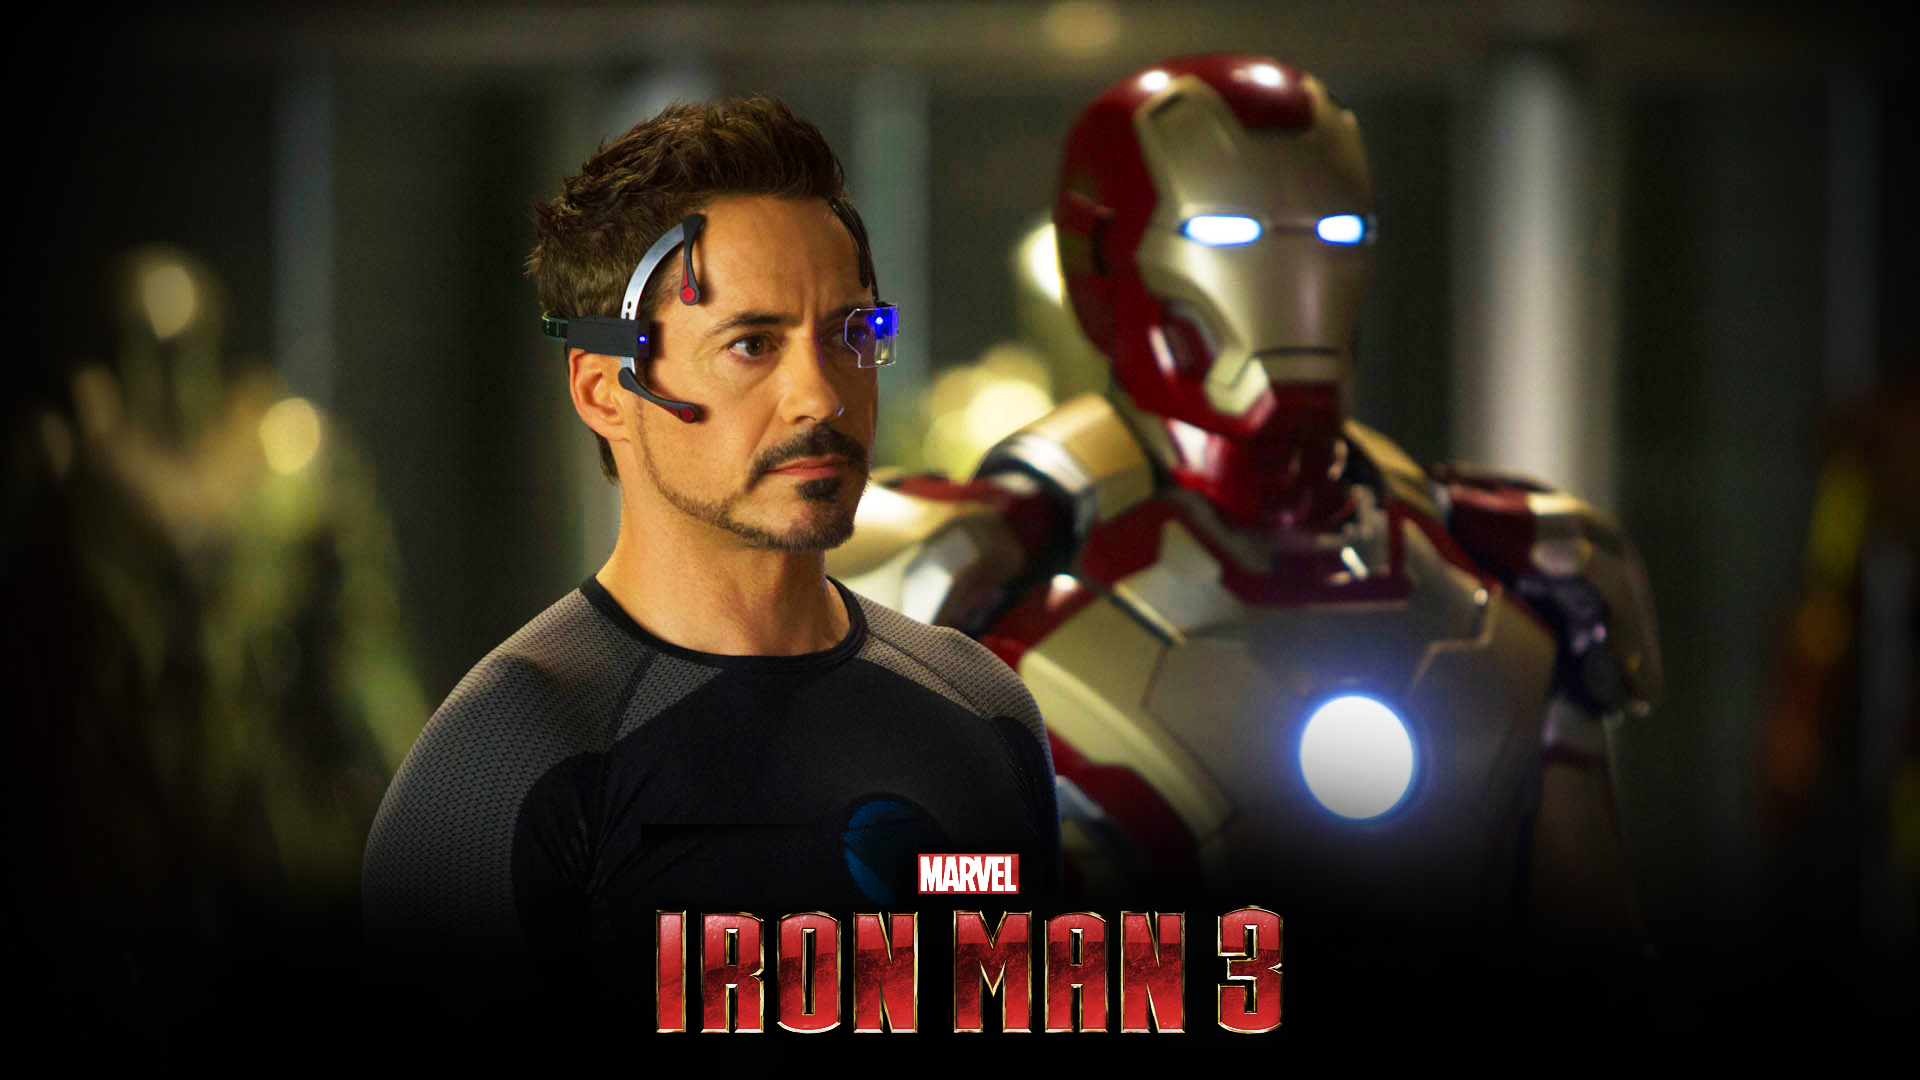 Iron Man 3 Images Wallpaper : Movies Wallpaper - Semrawut